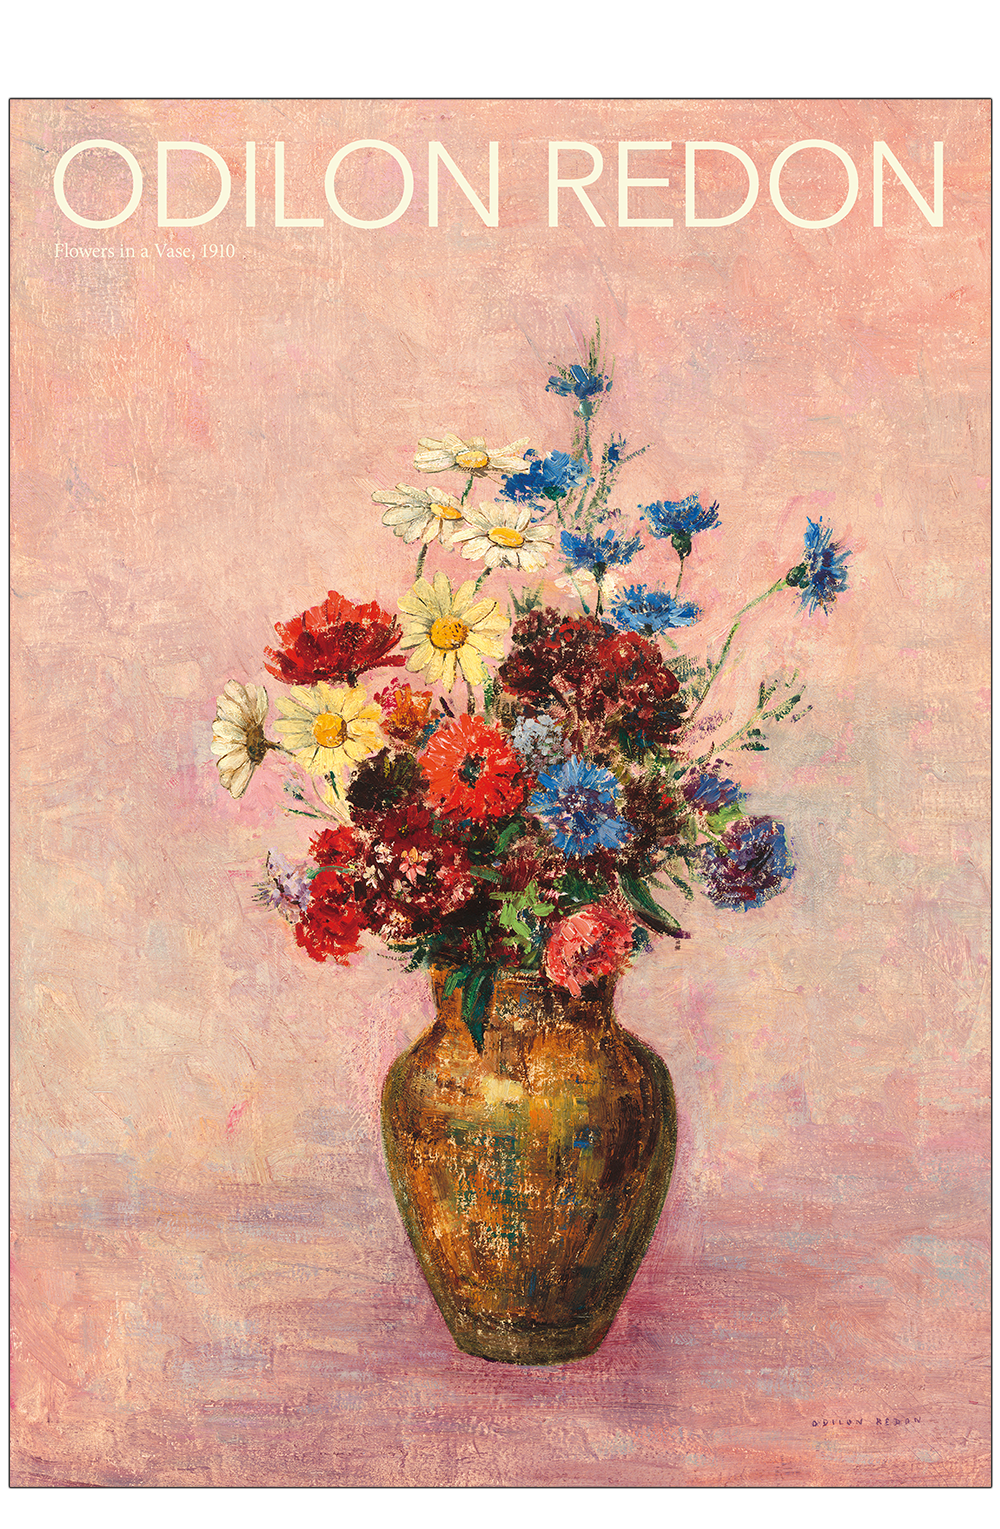 Peep Arbejdskraft romanforfatter Odilion Redon: Flowers in a vase (pink). Art poster for sale